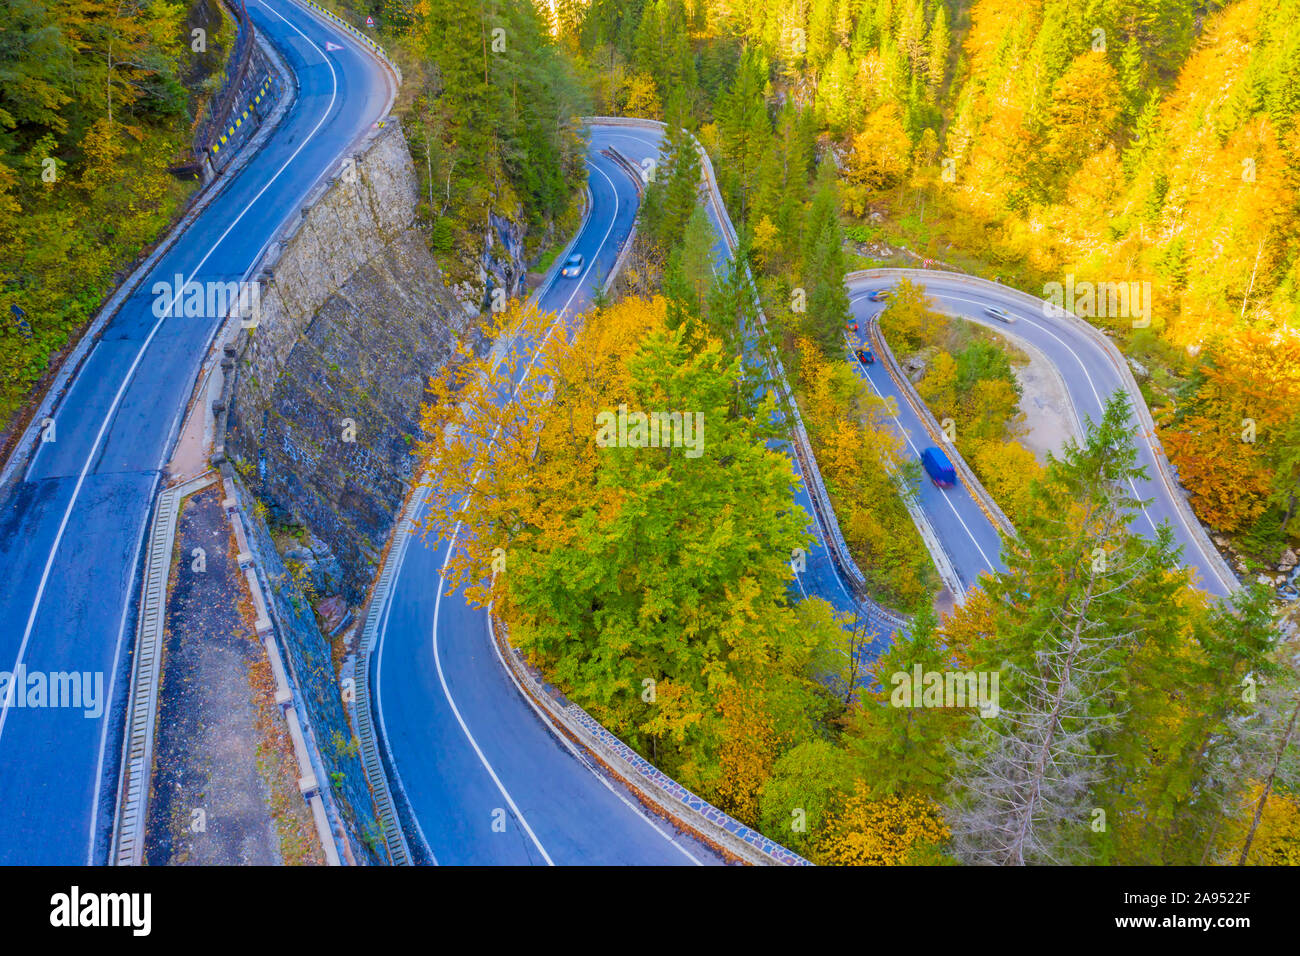 Route de montagne Serpentine en automne. Les Gorges de Bicaz est un col de montagne entre les deux régions historiques de Roumanie. Banque D'Images